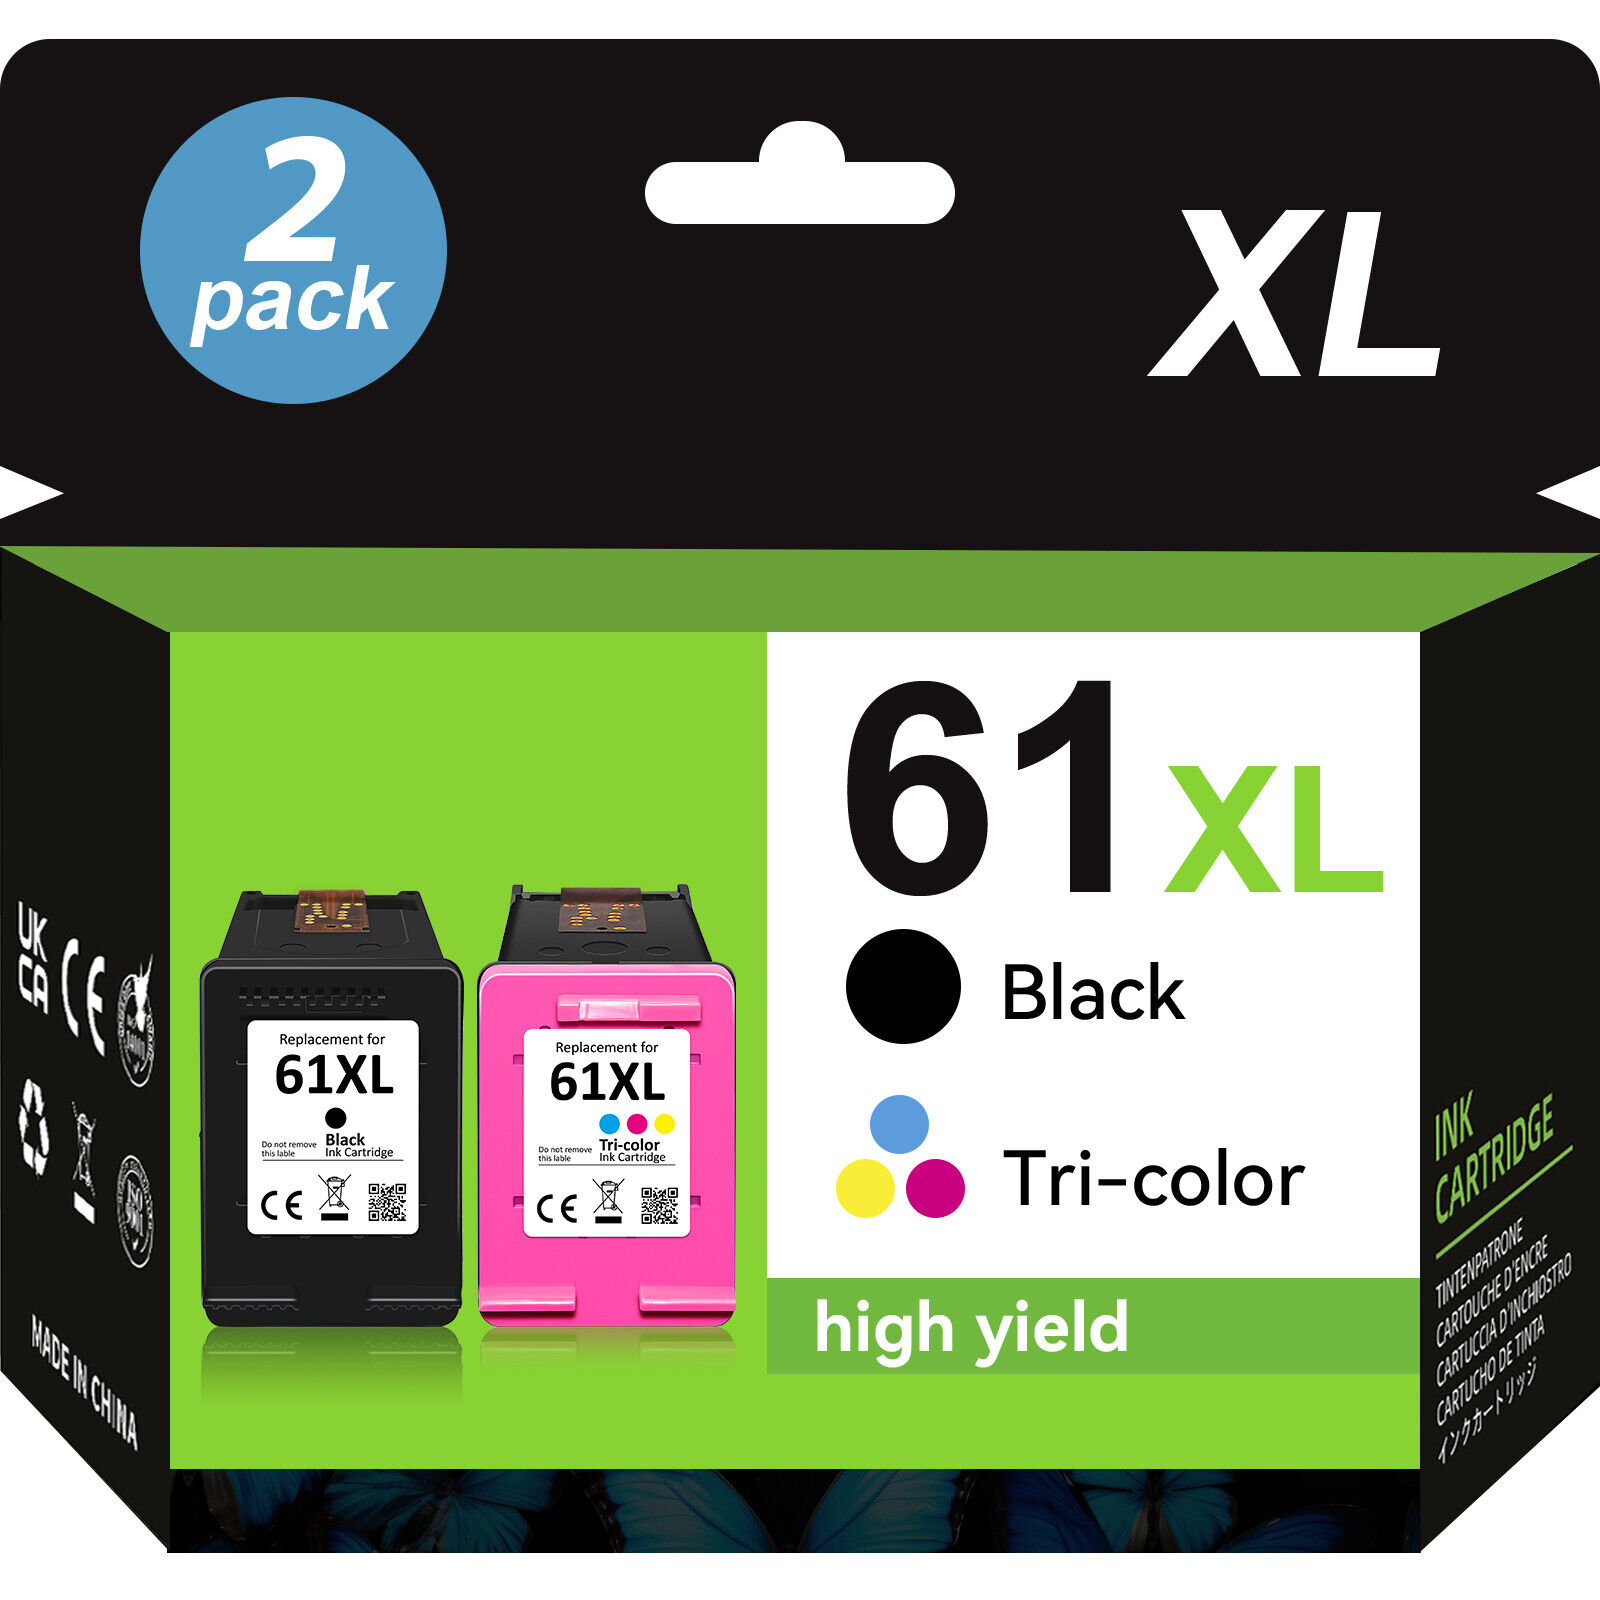 Ink Cartridges Black Color For HP 61 XL HP ENVY 4500 4505 5530 Deskjet 1050 2540